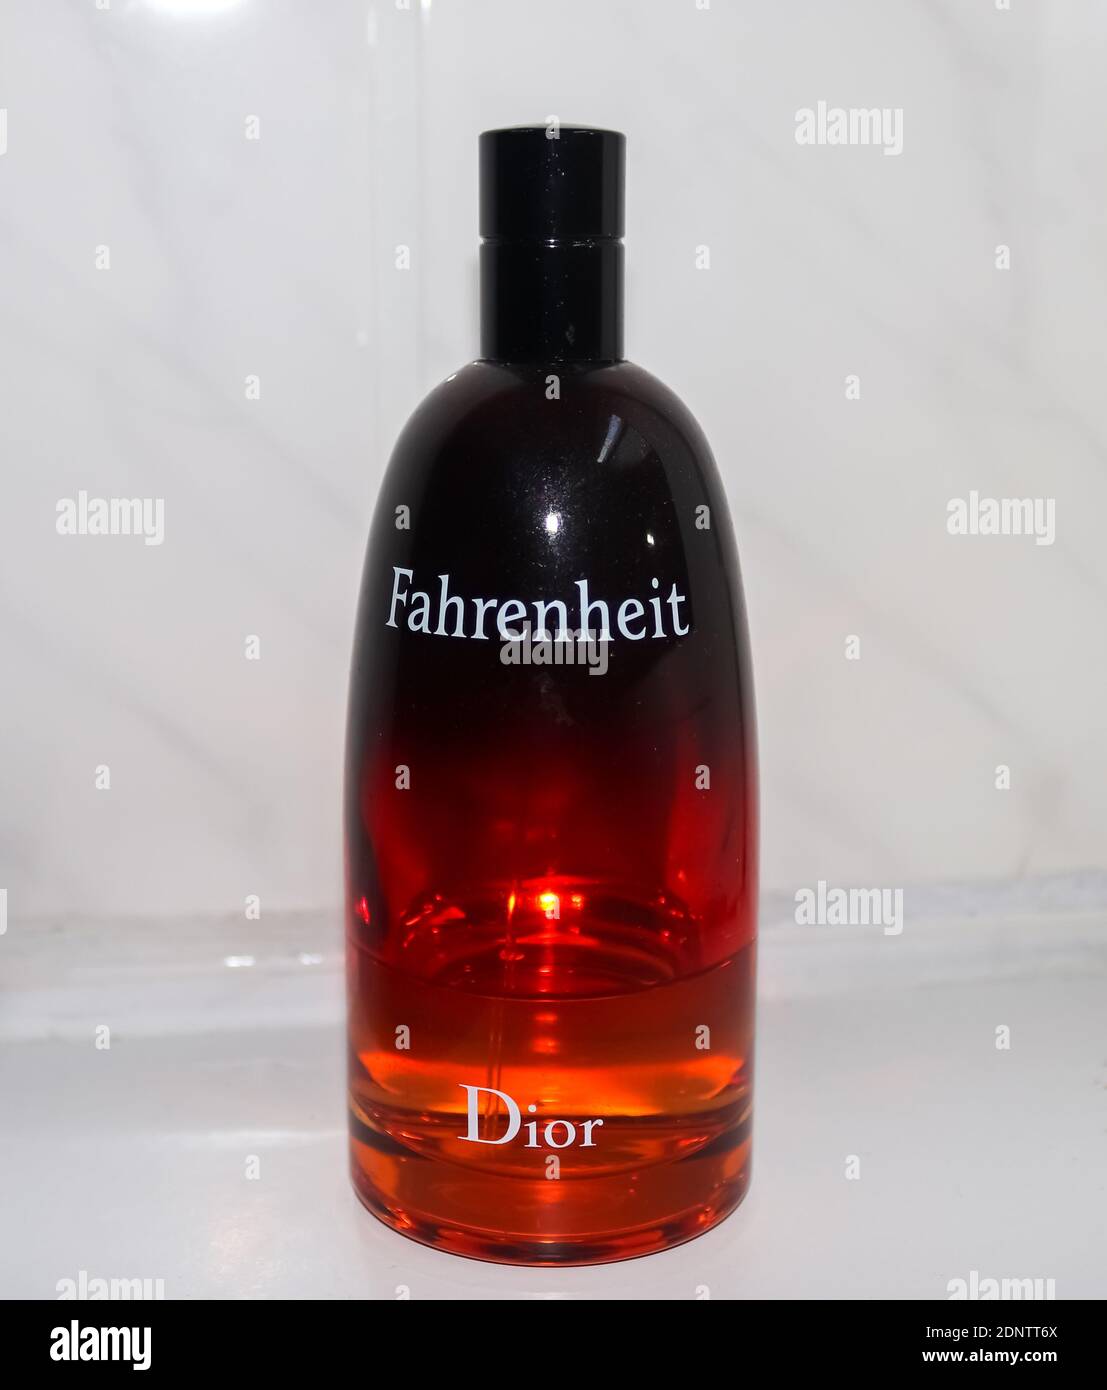 Rote Flasche Fahrenheit Parfüm von Dior vor Ein weißer Hintergrund  Stockfotografie - Alamy